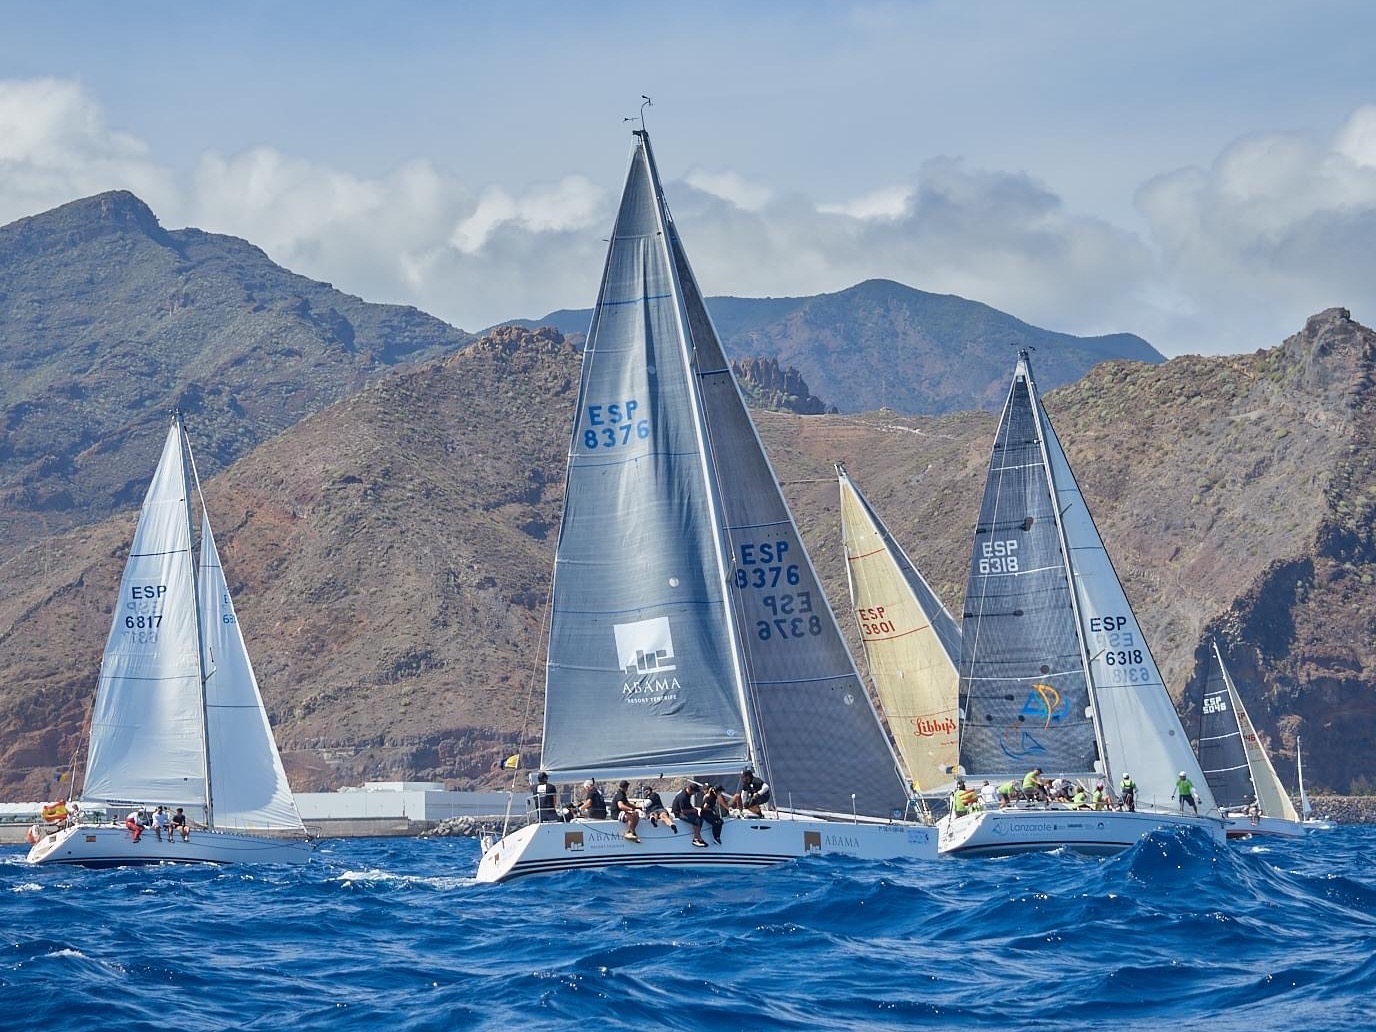 Abama wins the Infantas de España Canary Islands regatta